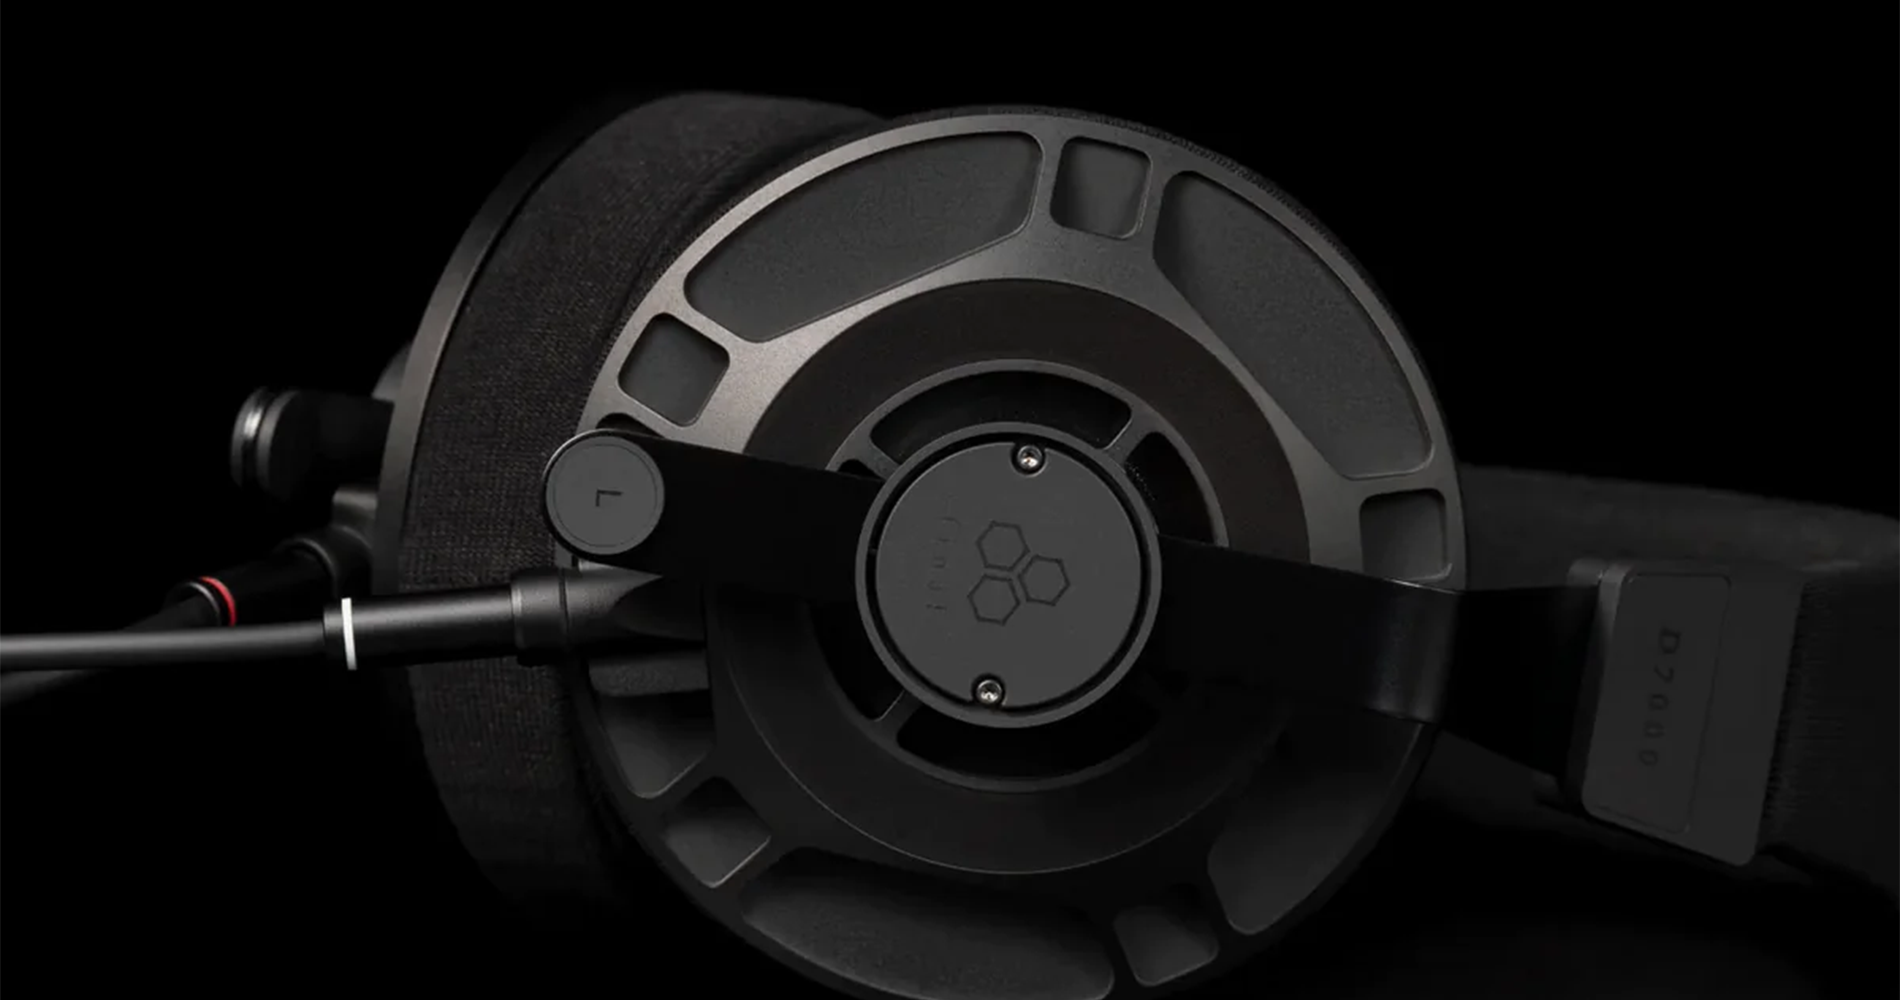 Final Audio D7000 Semi-Open Planar Magnetic Headphones Overview